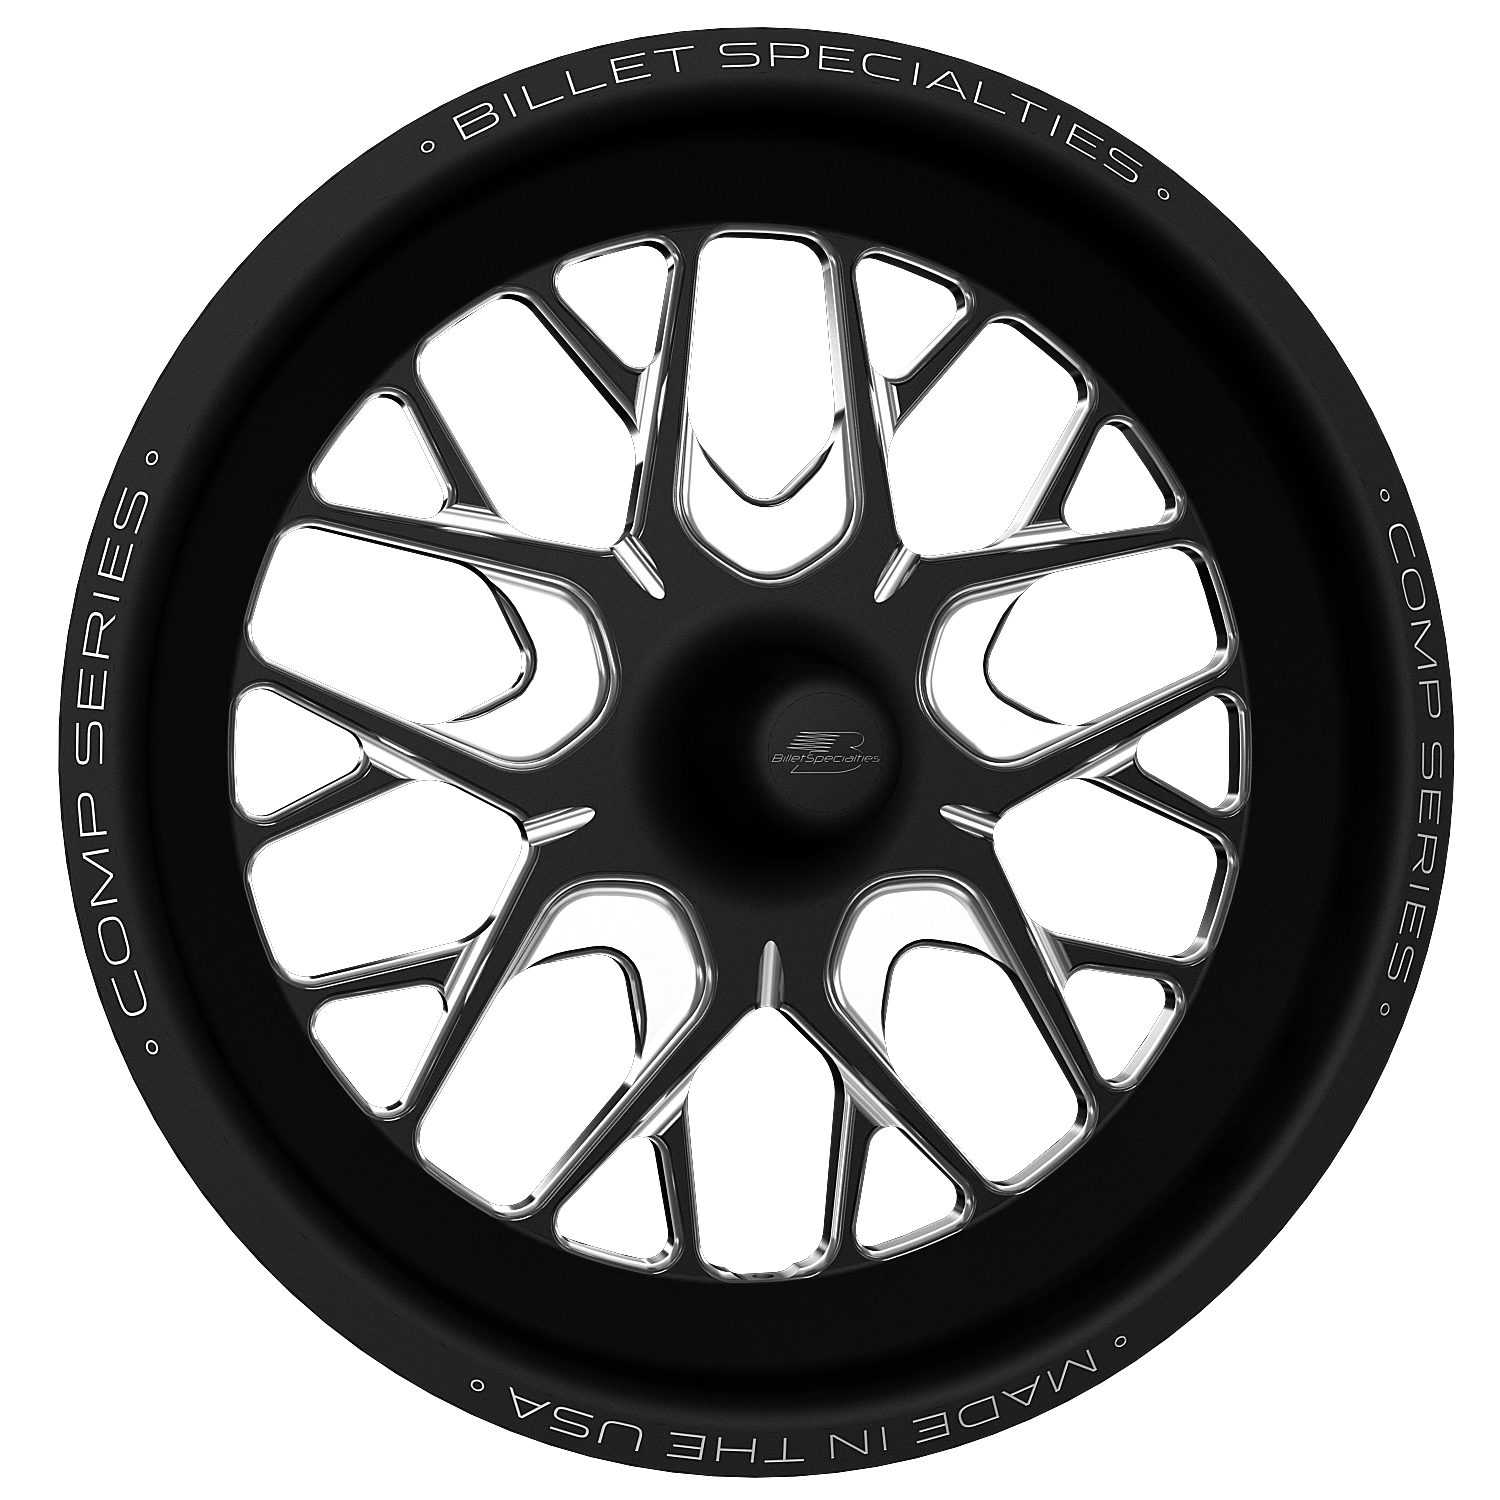 COMP 8 Wheel, Size: 15" x 3.50", Bolt Pattern: Strange GT Spindle-Mount [Black Finish]